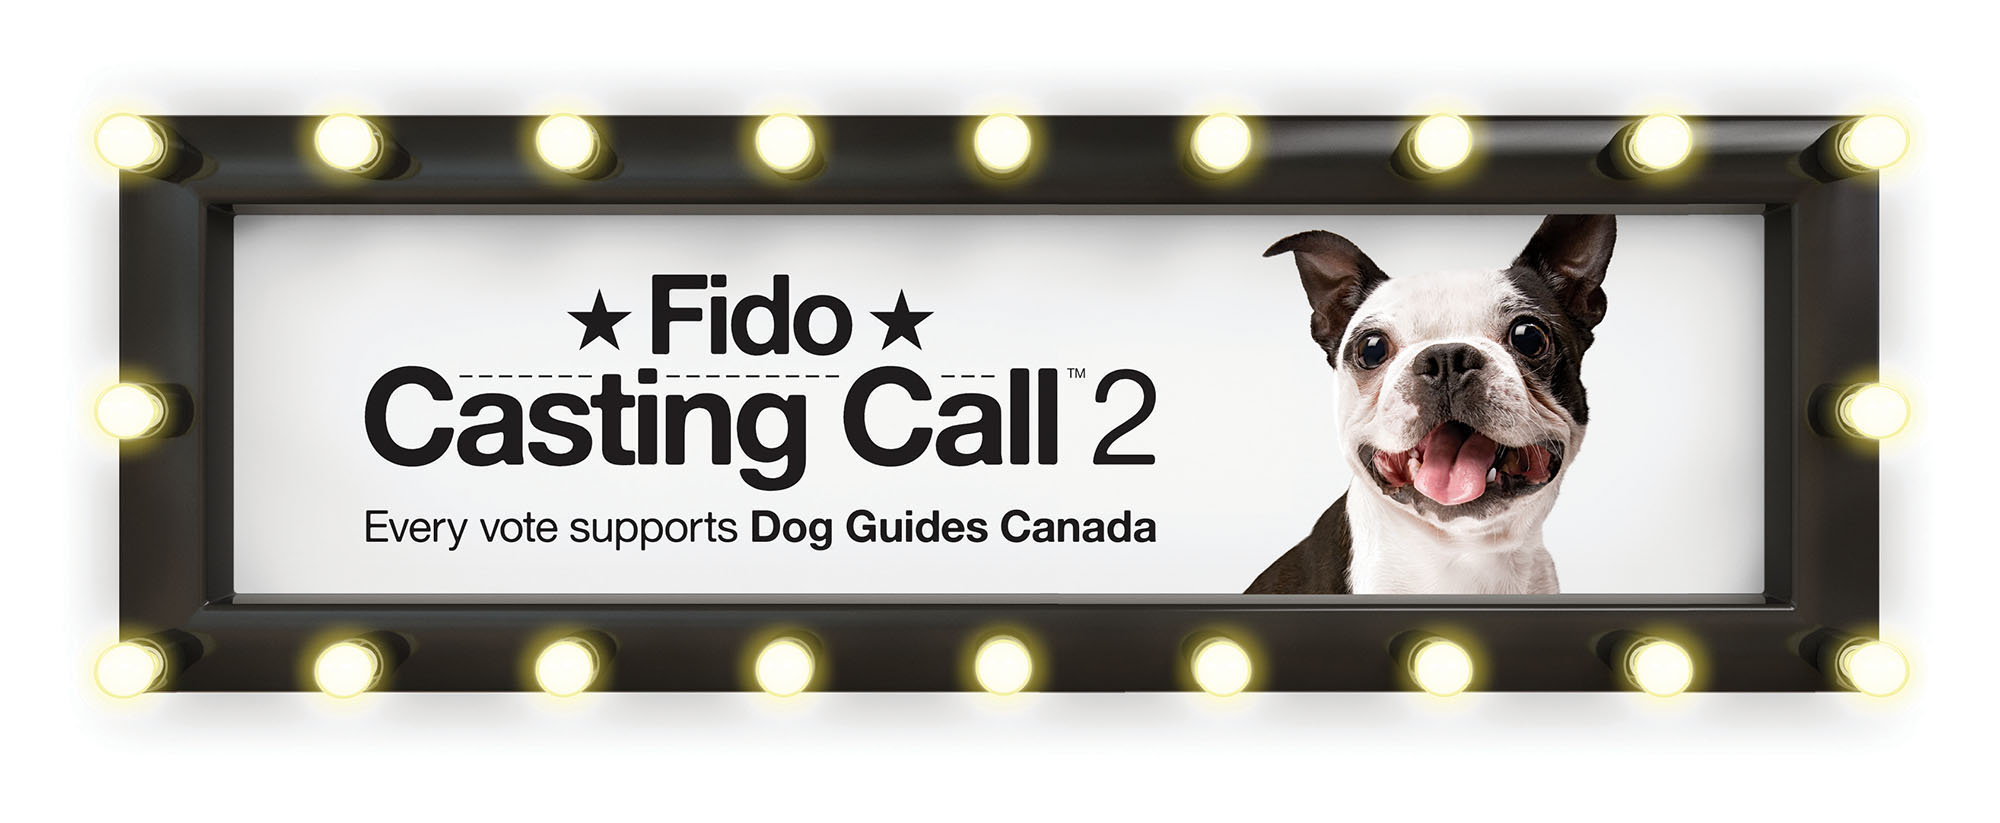 Fido Casting Call 2